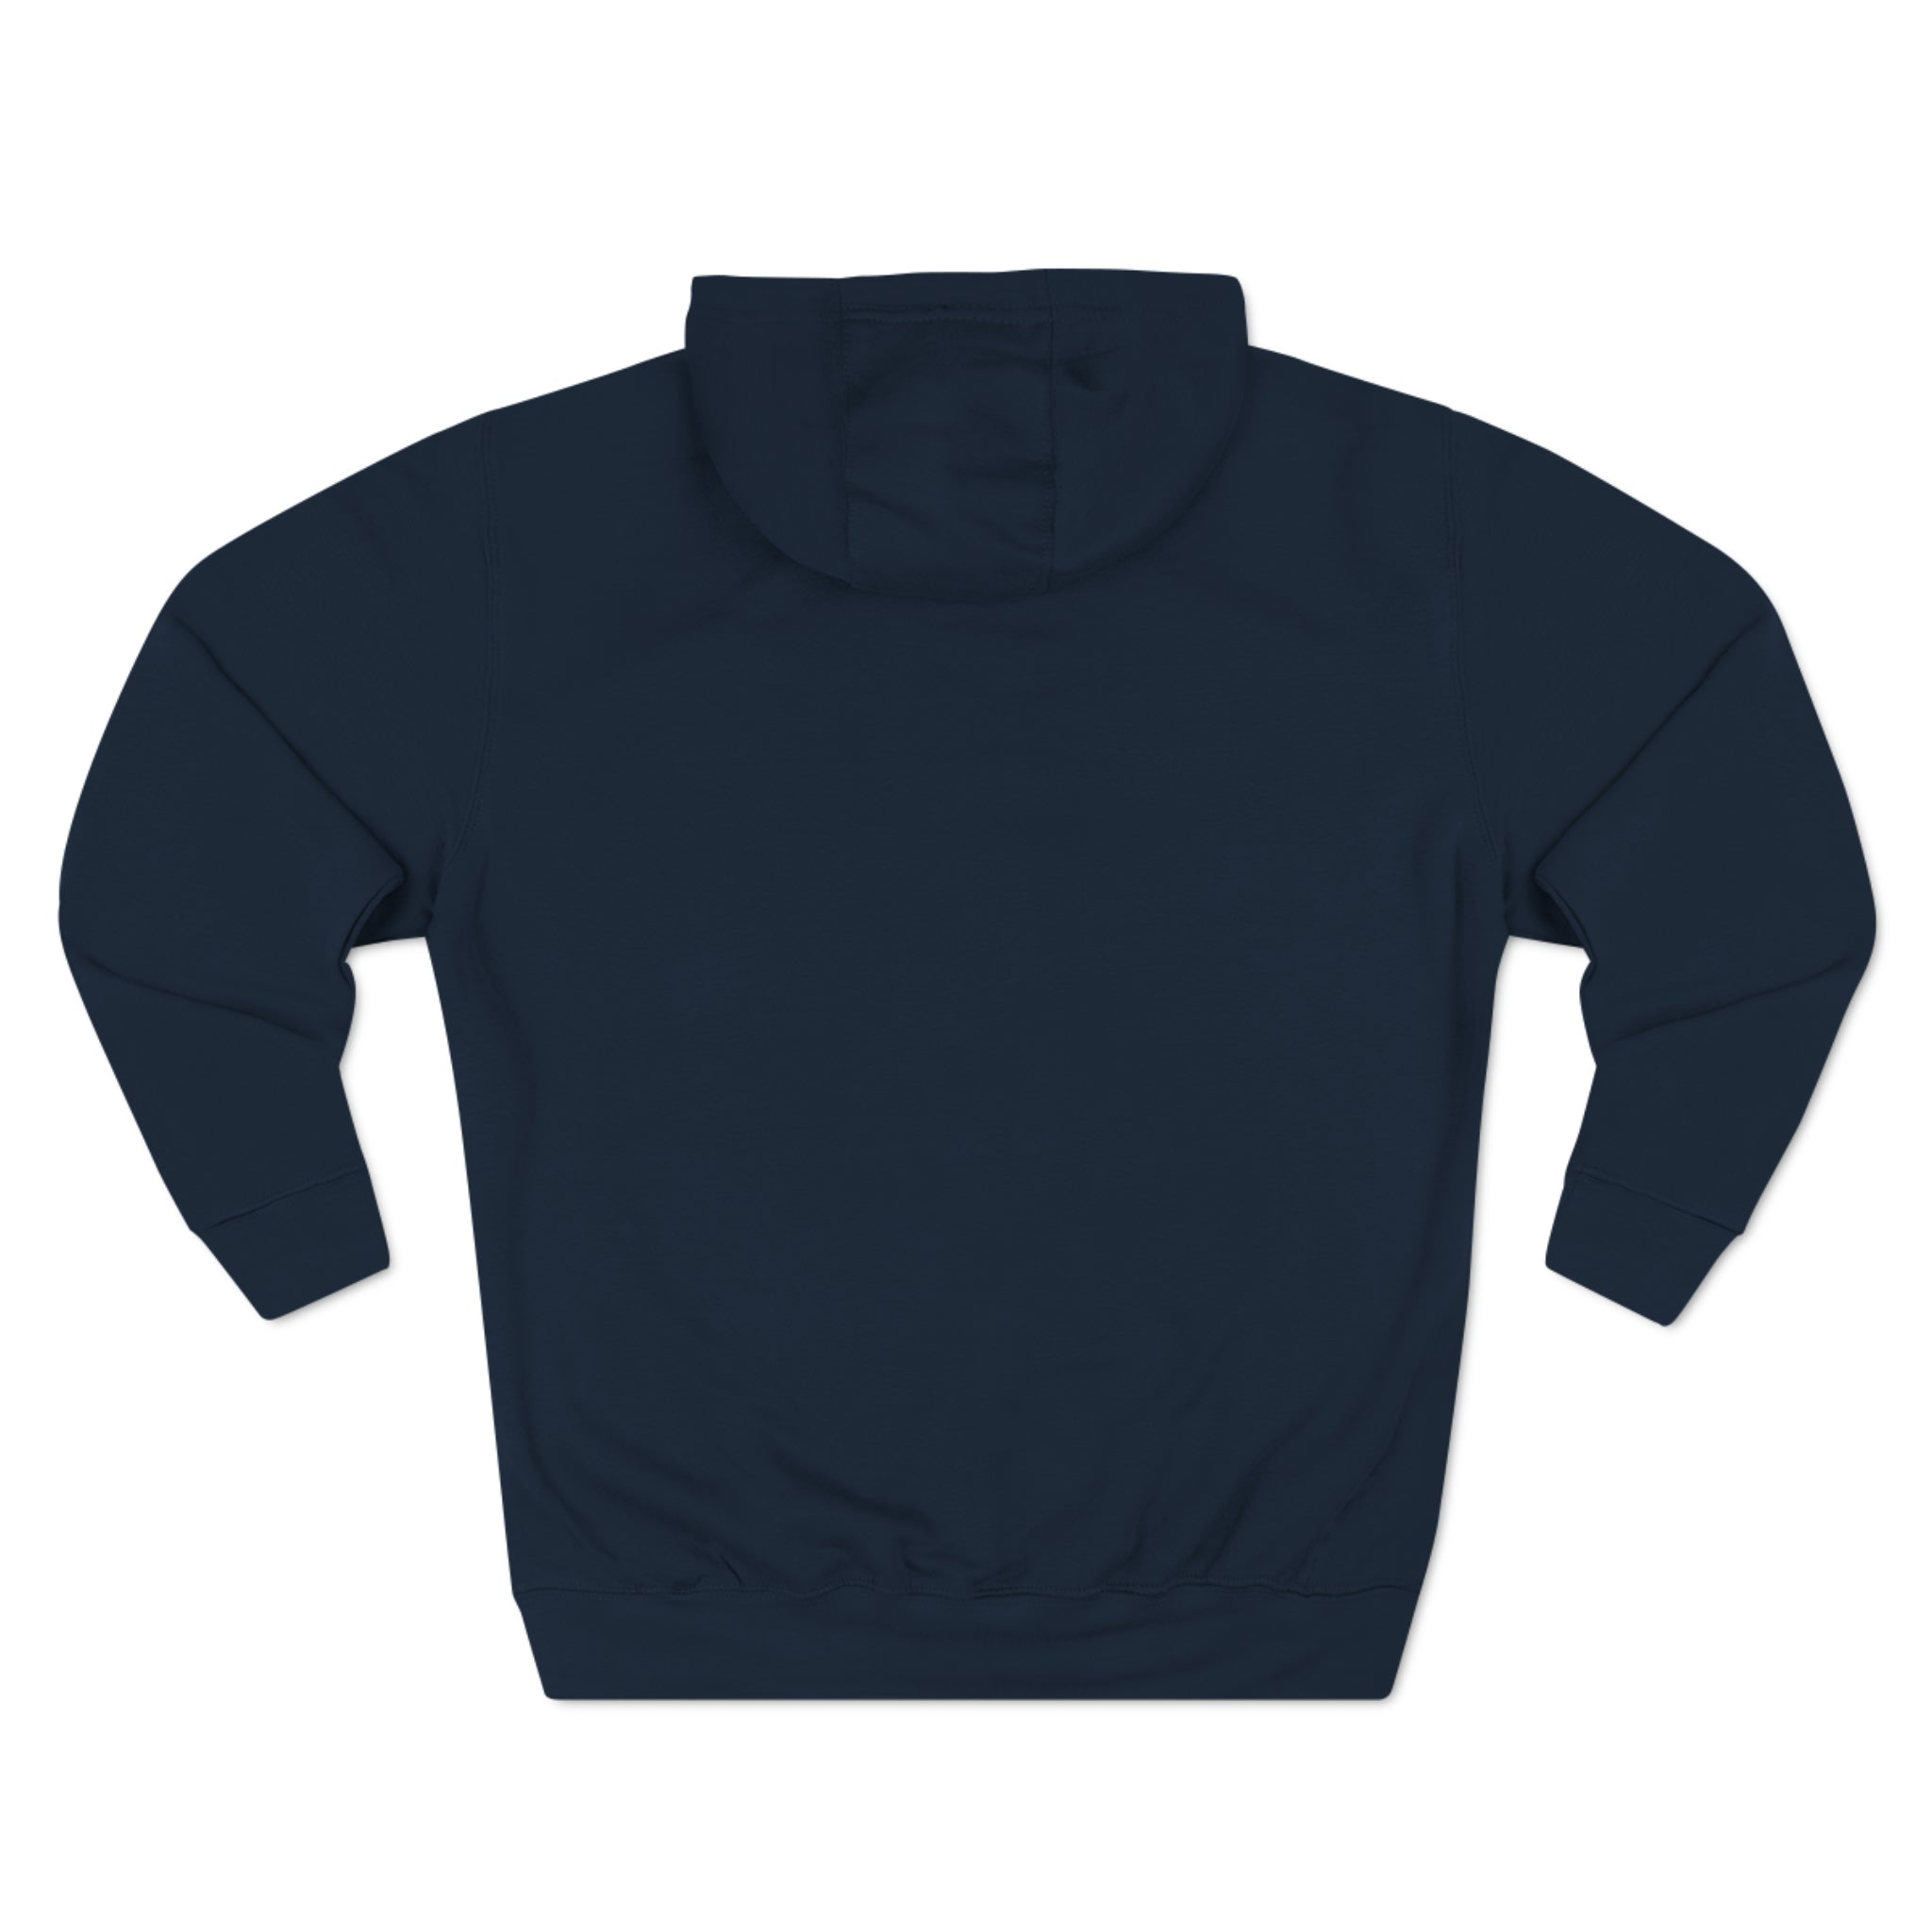 PPYQ® Orignal Unisex Premium Pullover Hoodie